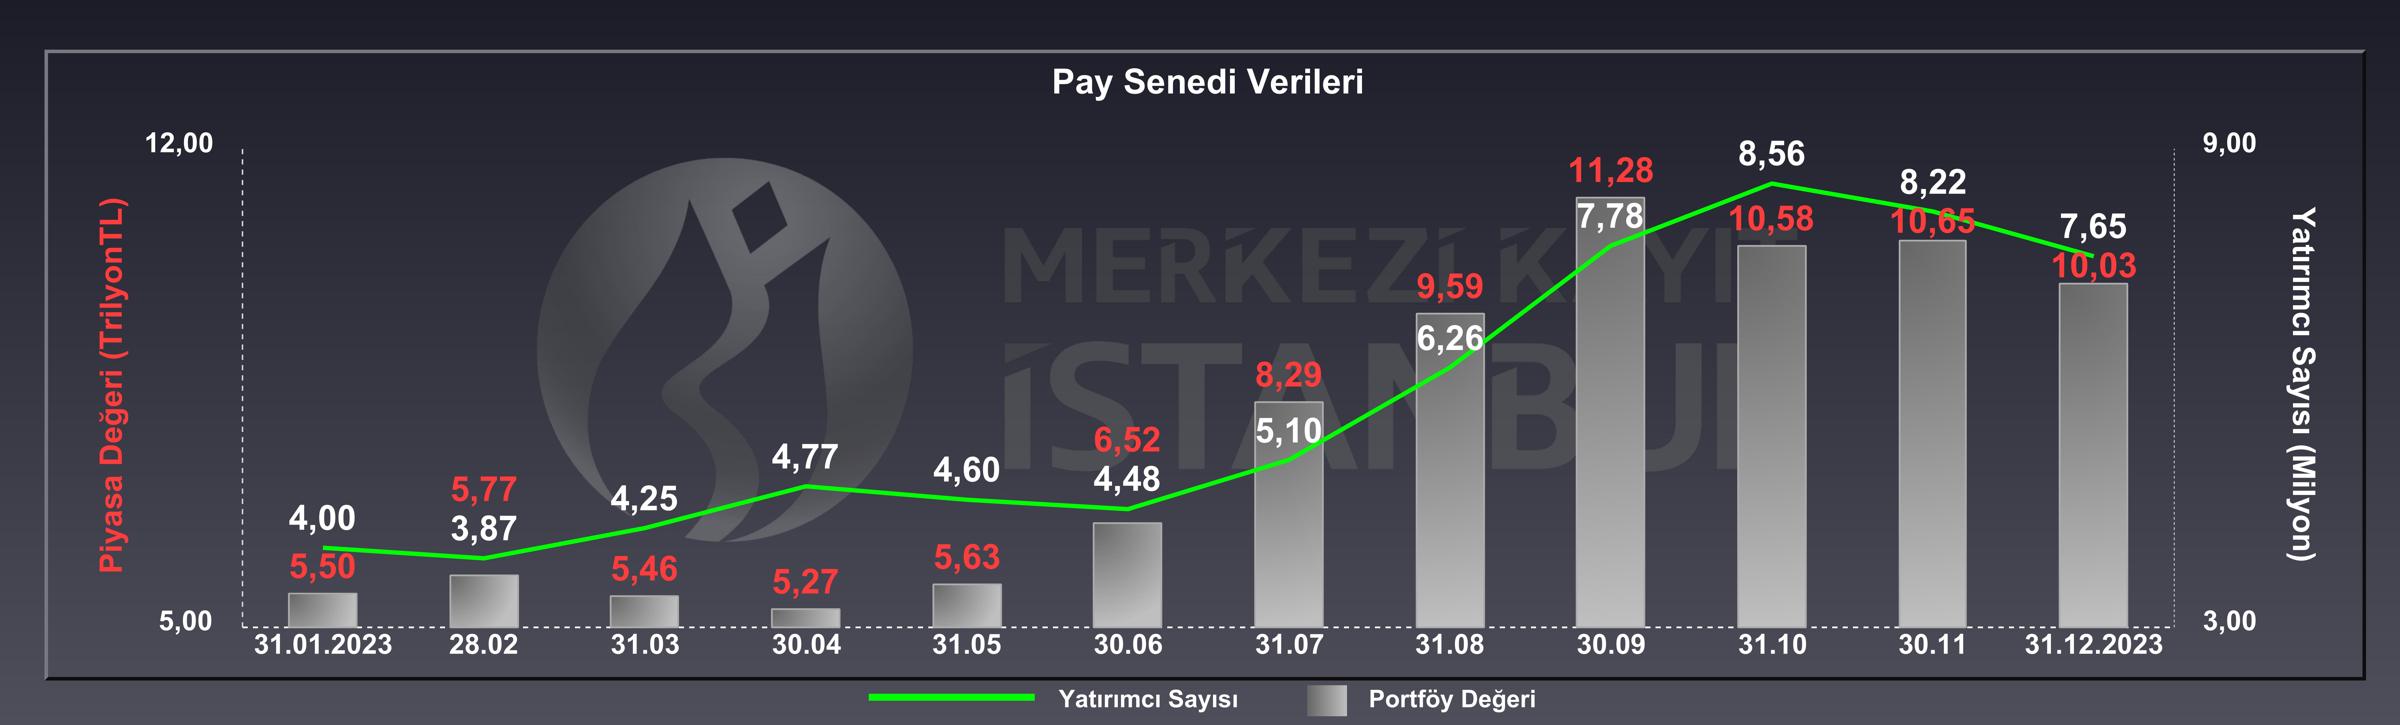 Borsa İstanbul Pay Senedi Verileri